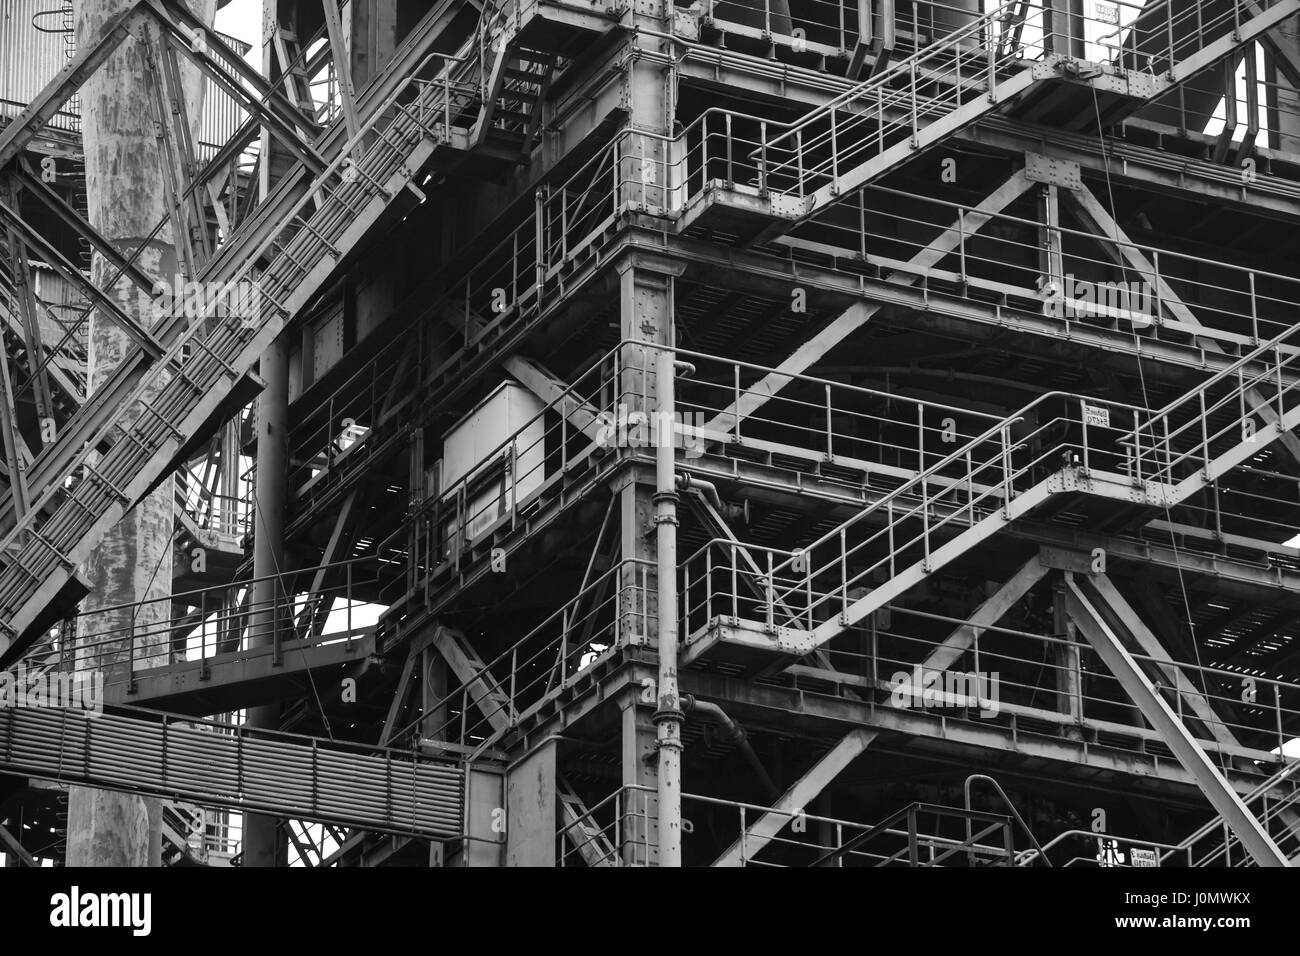 Escaliers en acier conduisent à la partie supérieure du haut-fourneau au Landschaftspark, une forge abandonnée à Duisburg, Allemagne Banque D'Images